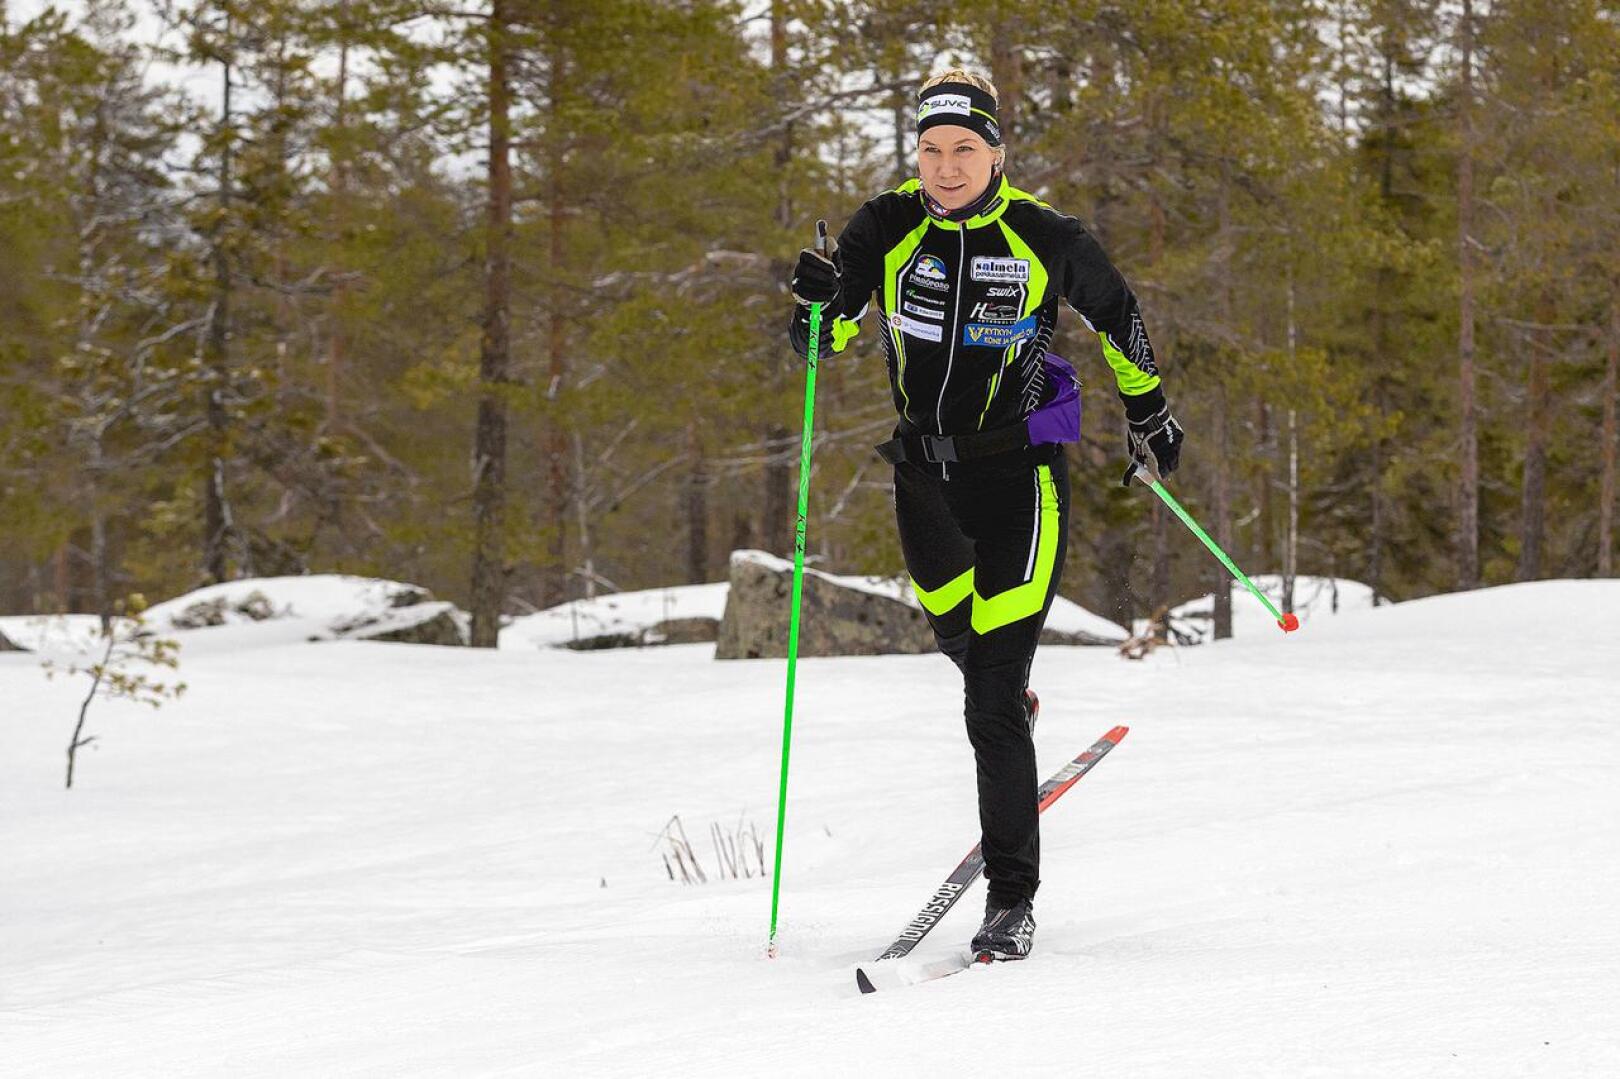 ”Vaikka sunnuntaina ei parasta menoa ollutkaan, niin sain kuitenkin nousujohteisen hiihdon”, kertoi Team Skiersin Roosa Juuska.